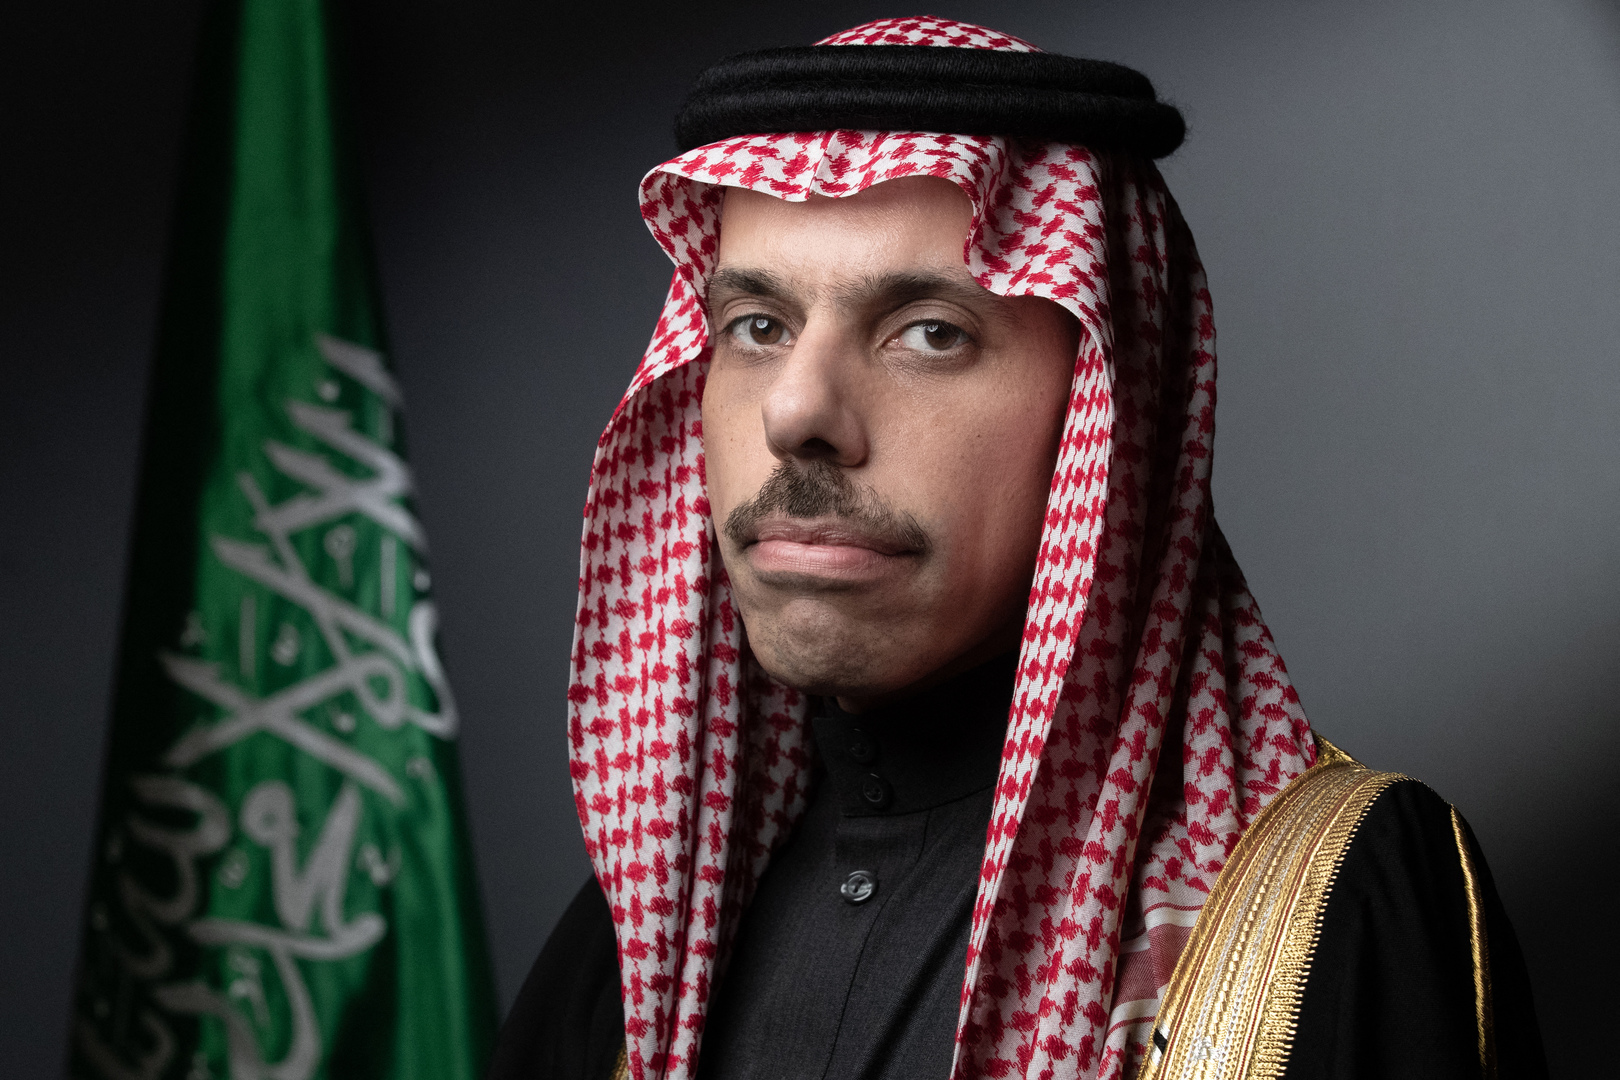 وزير الخارجية السعودي يعلّق على احتمال لقاء نظيره الإيراني